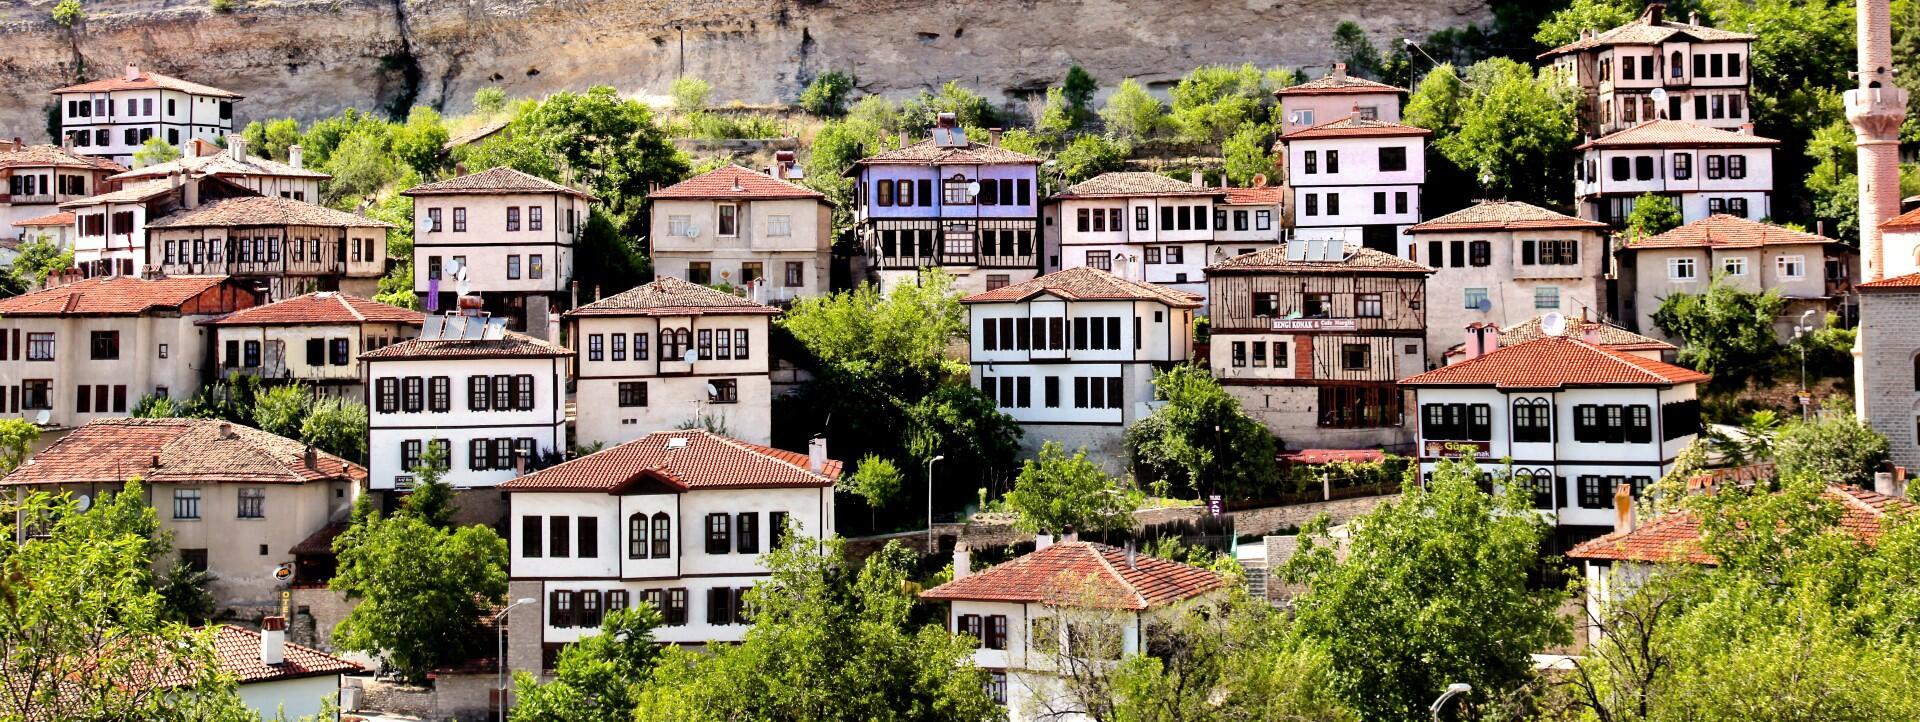 Sömestr tatilinde gidilecek en güzel yerler Hepsi Türkiye'de